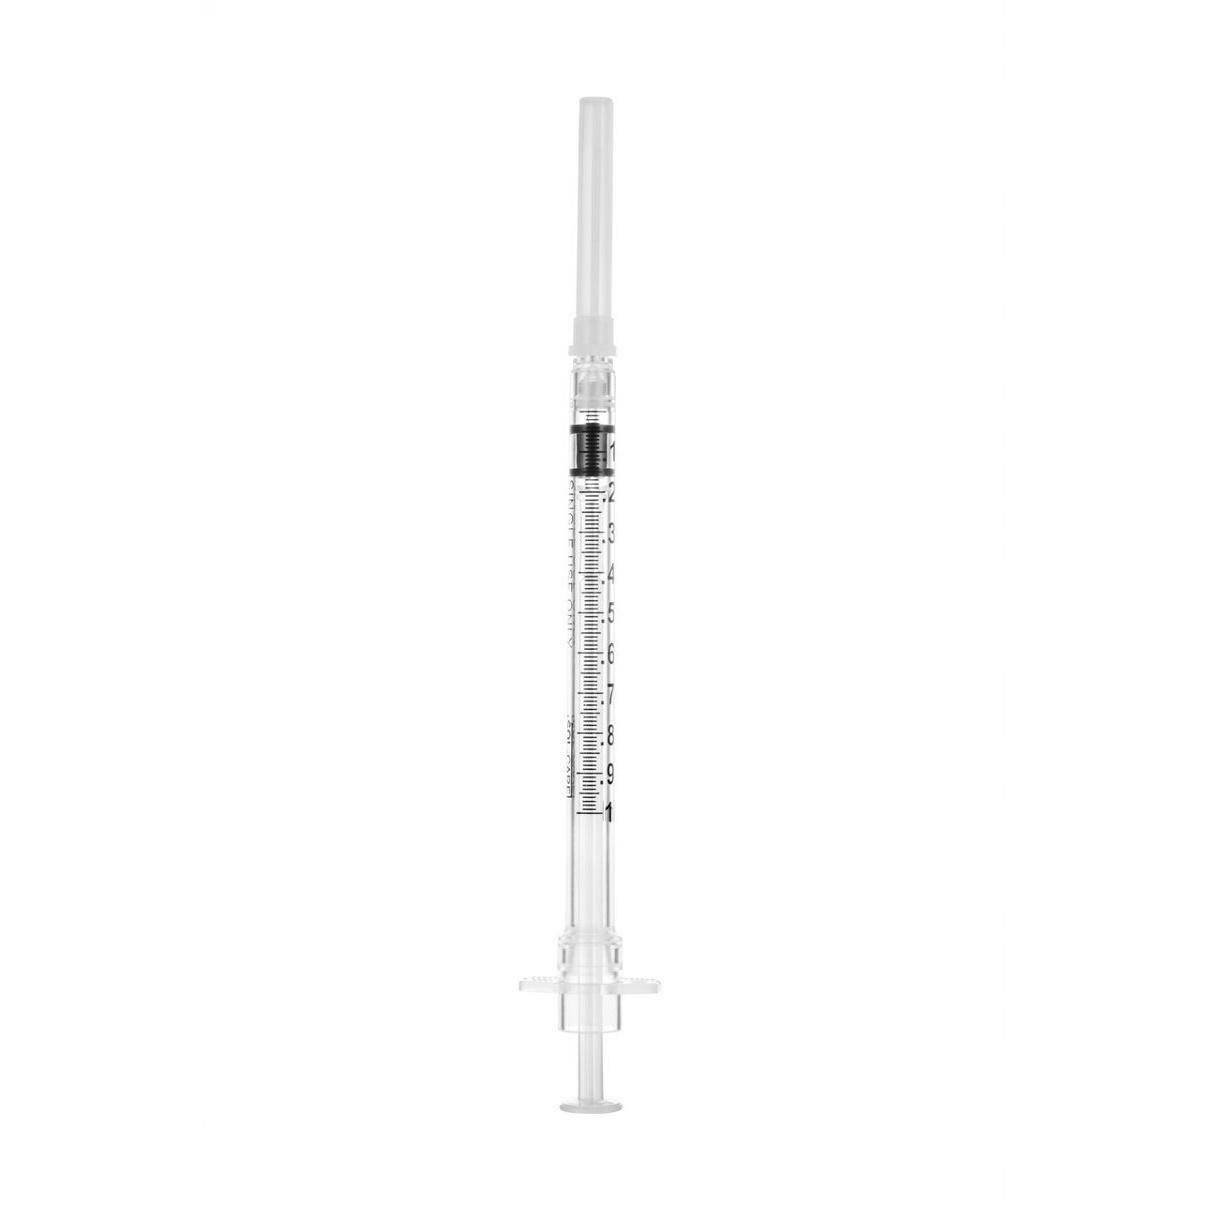 1ml 26g 3/8 inch Sol-Care Safety Syringe with Fixed Needle - UKMEDI